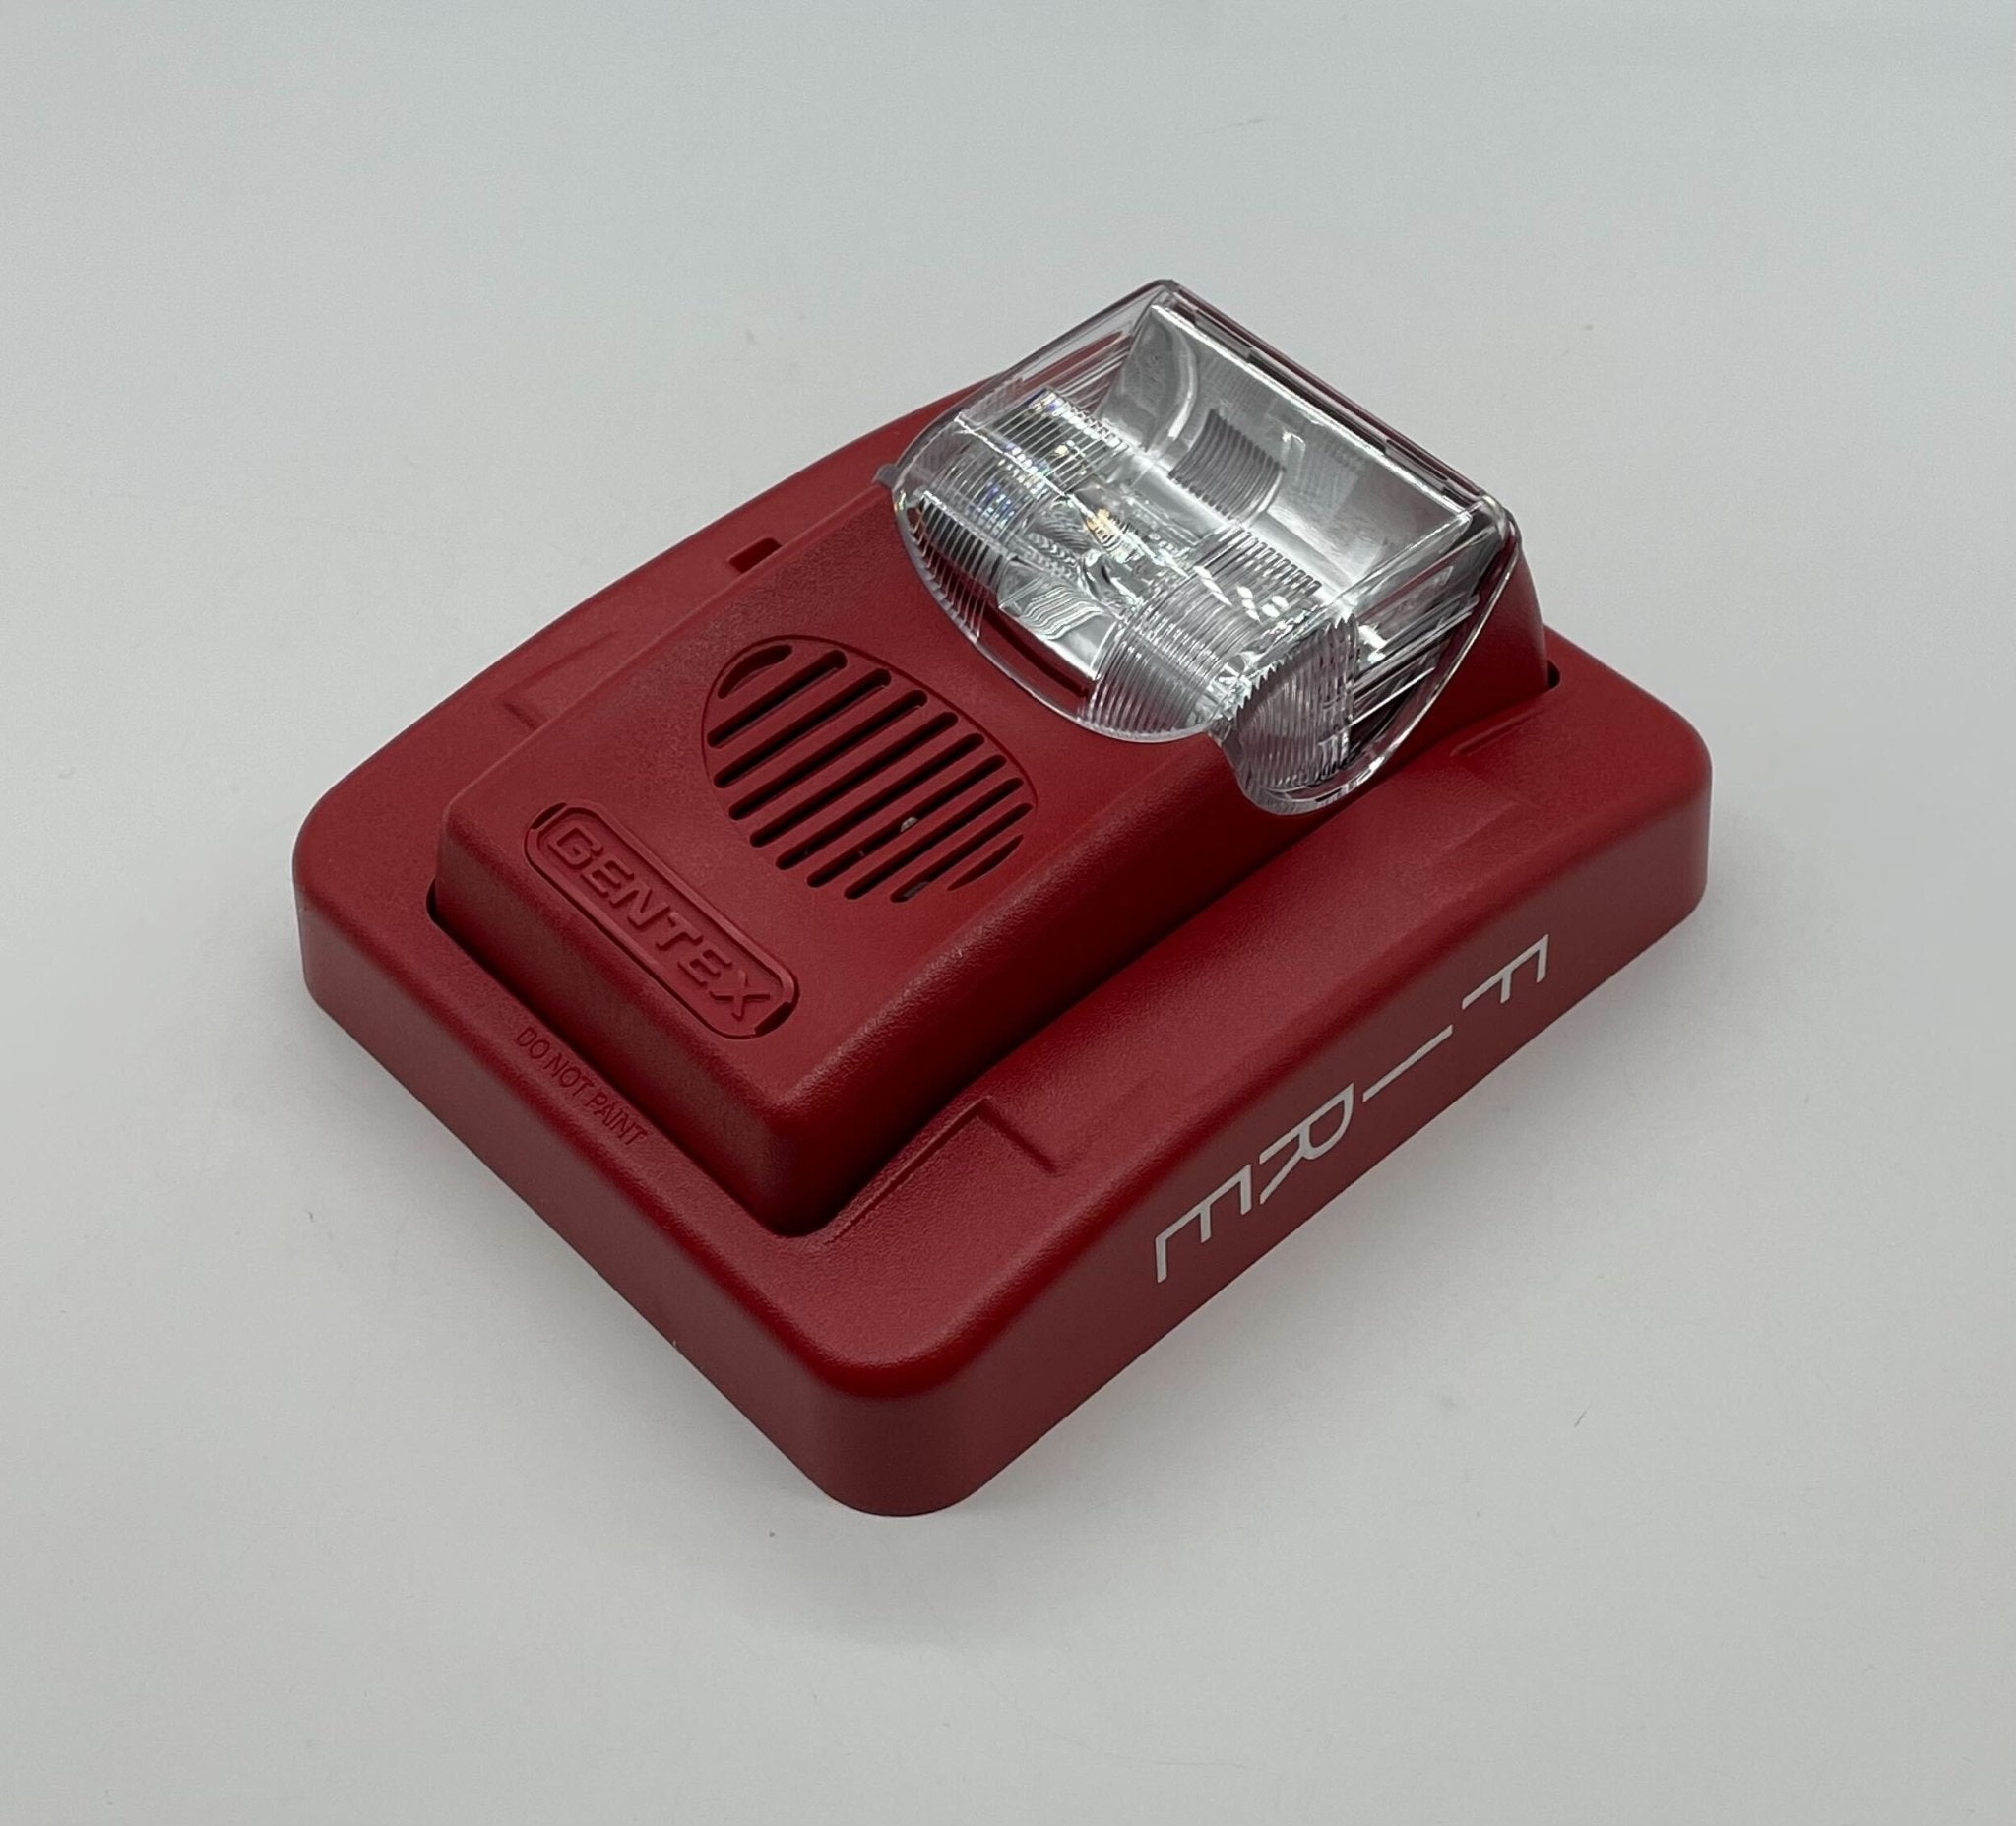 Gentex GEC24-1575WR - The Fire Alarm Supplier